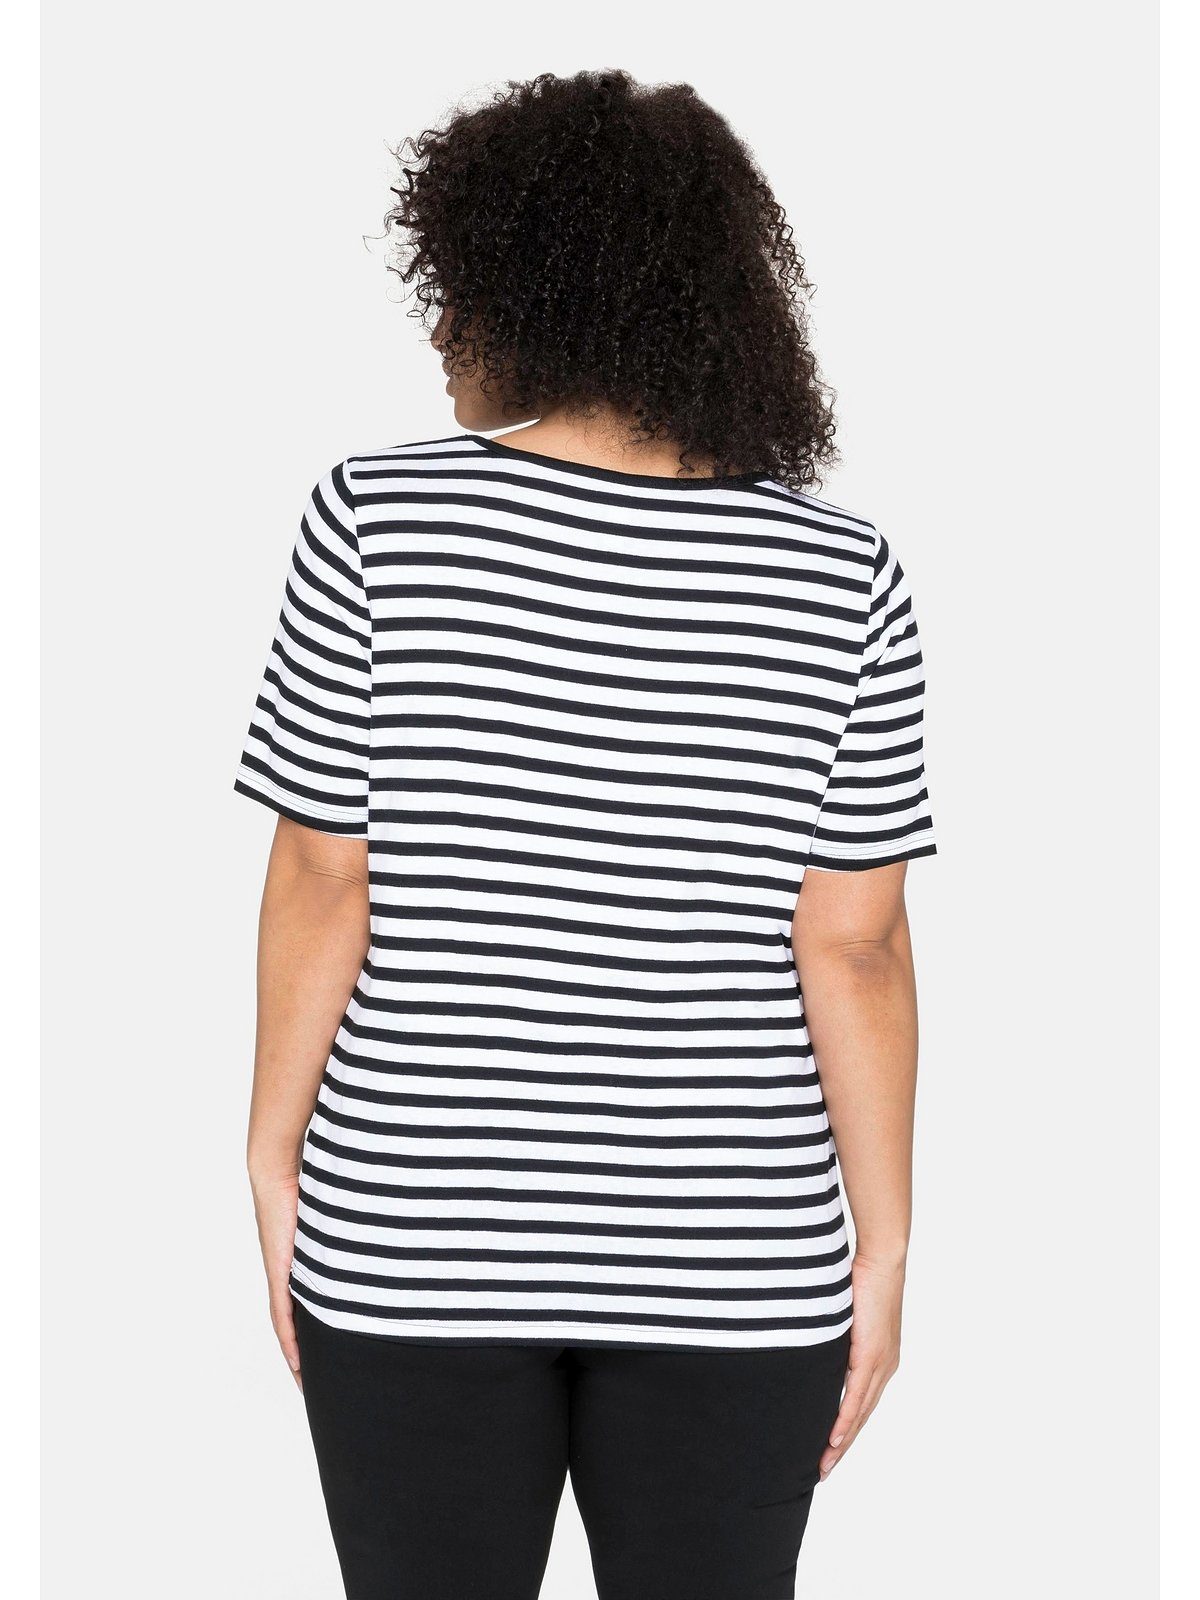 Sheego T-Shirt Große Größen mit Rippware aus garngefärbtem schwarz-weiß Ringel